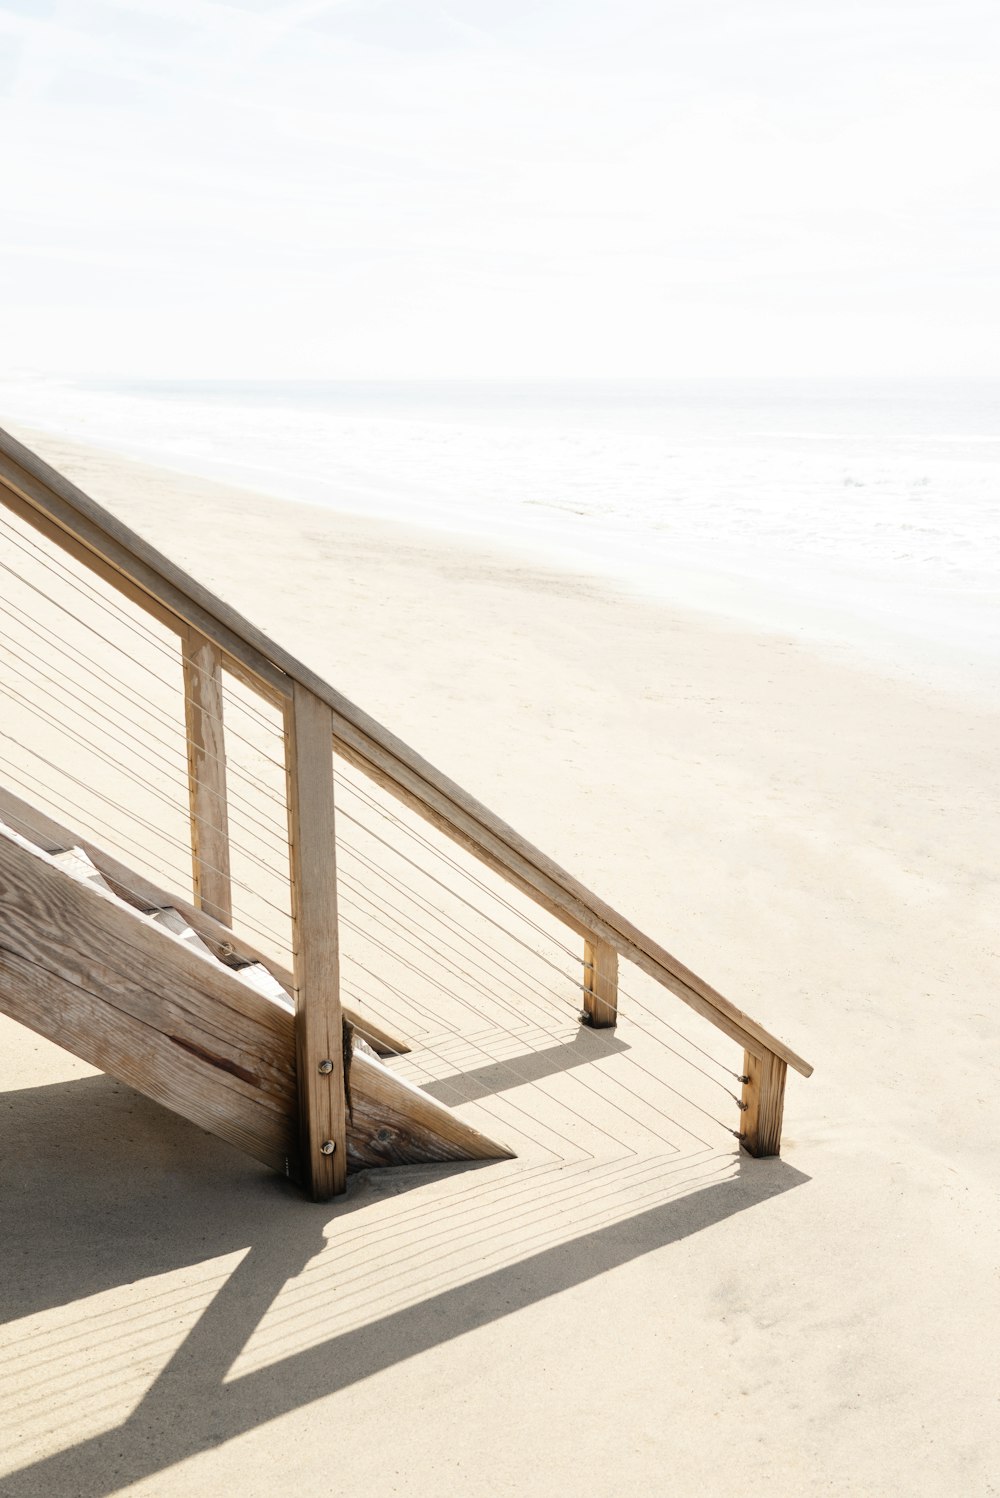 Escalera de madera marrón en la playa de arena blanca durante el día